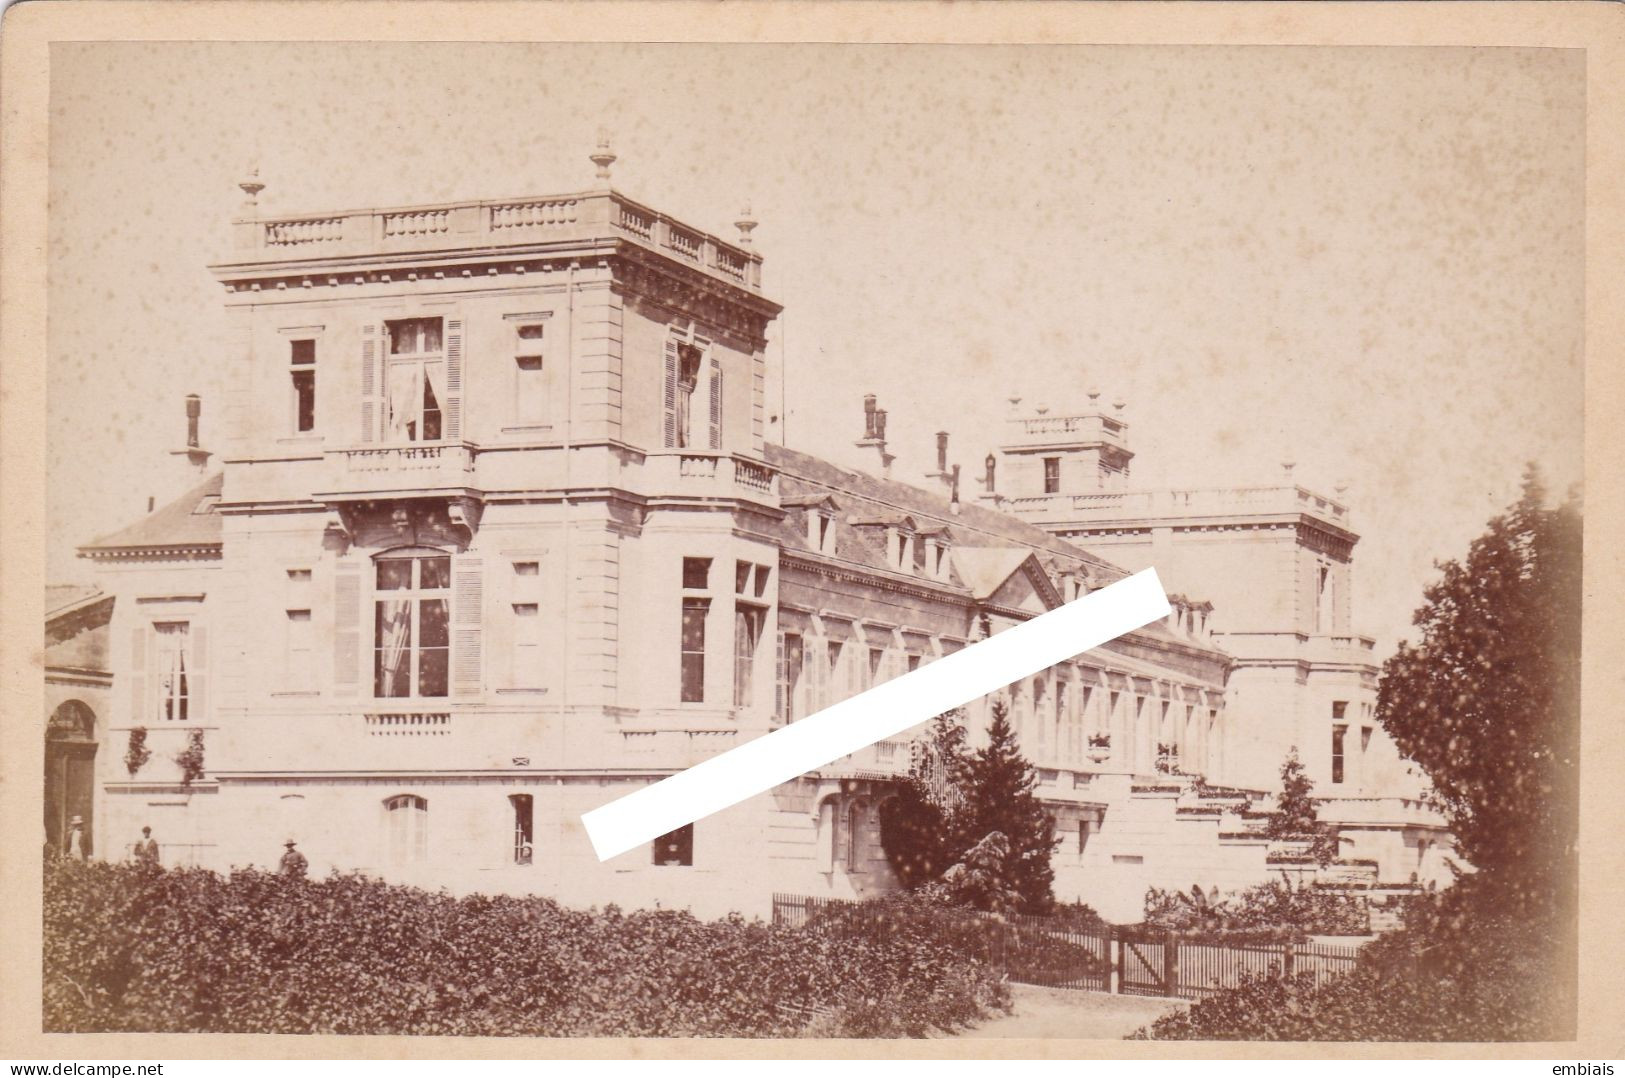 SAINT-JULIEN BEYCHEVELLE 1880/90 Château Ducru-Beaucaillou Propriétaire Du Domaine Mr Johnston Photographie A.Tepereau - Places